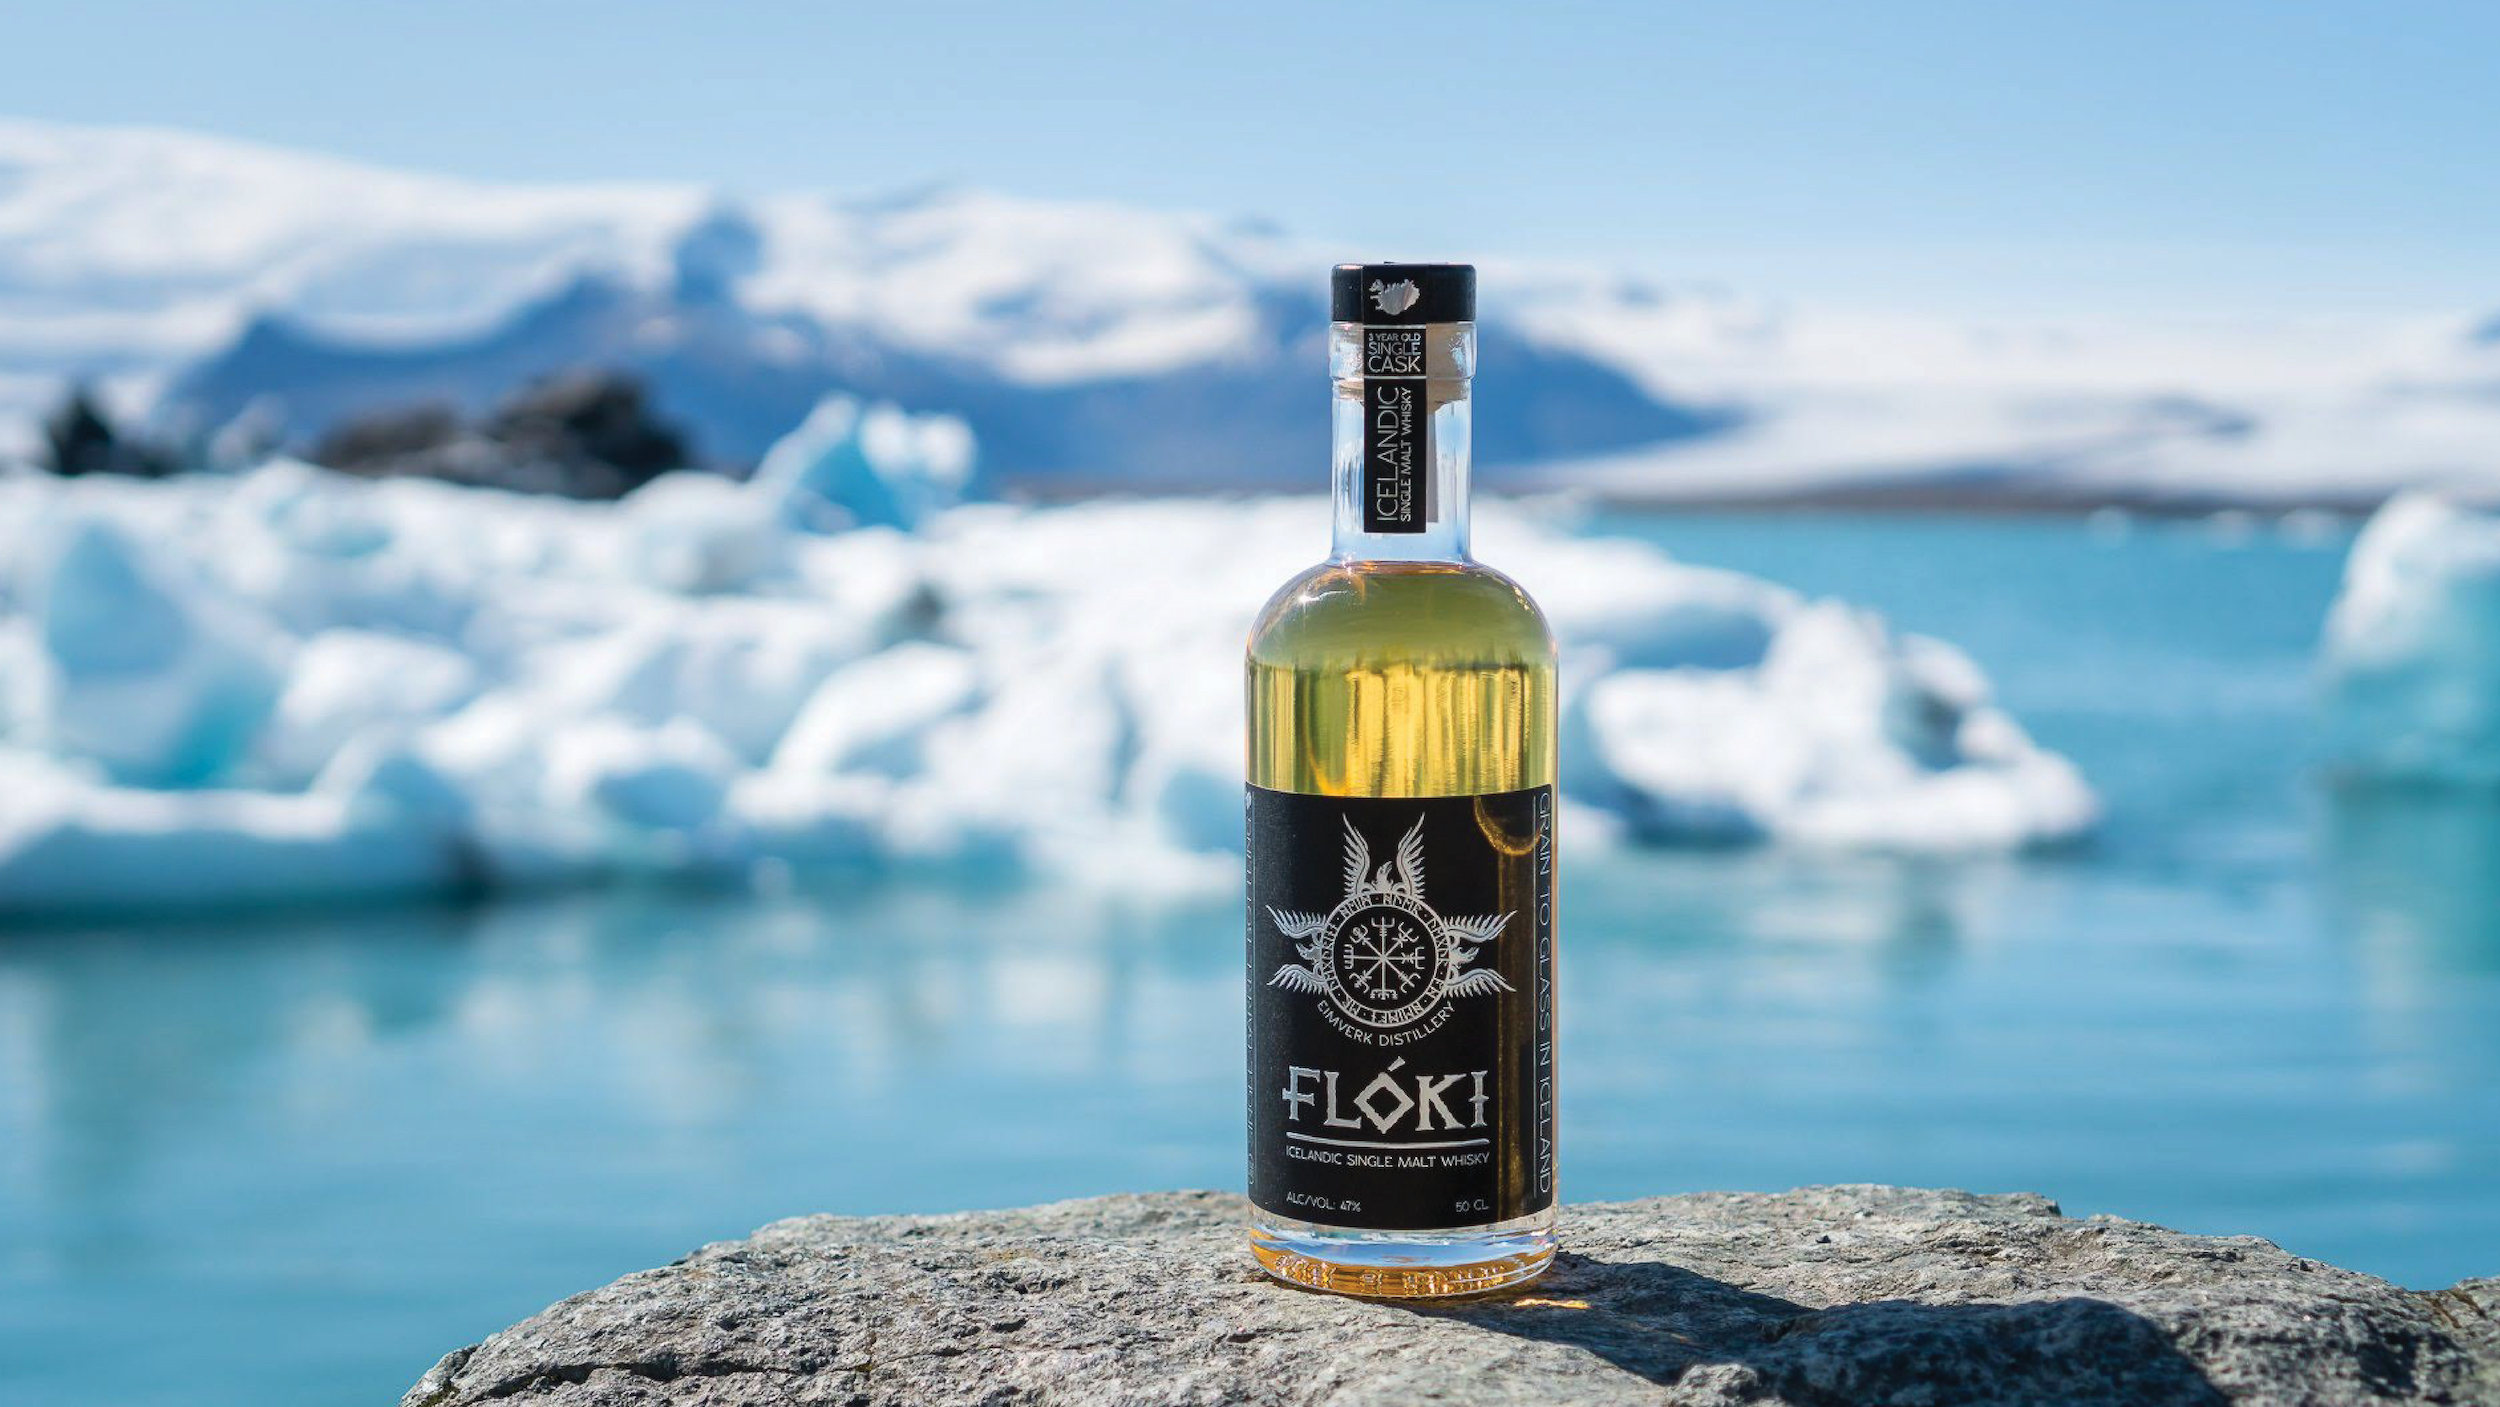 羊のフン？！でスモークした
アイスランド産ウイスキー「フロキ」の新バッチ入荷！